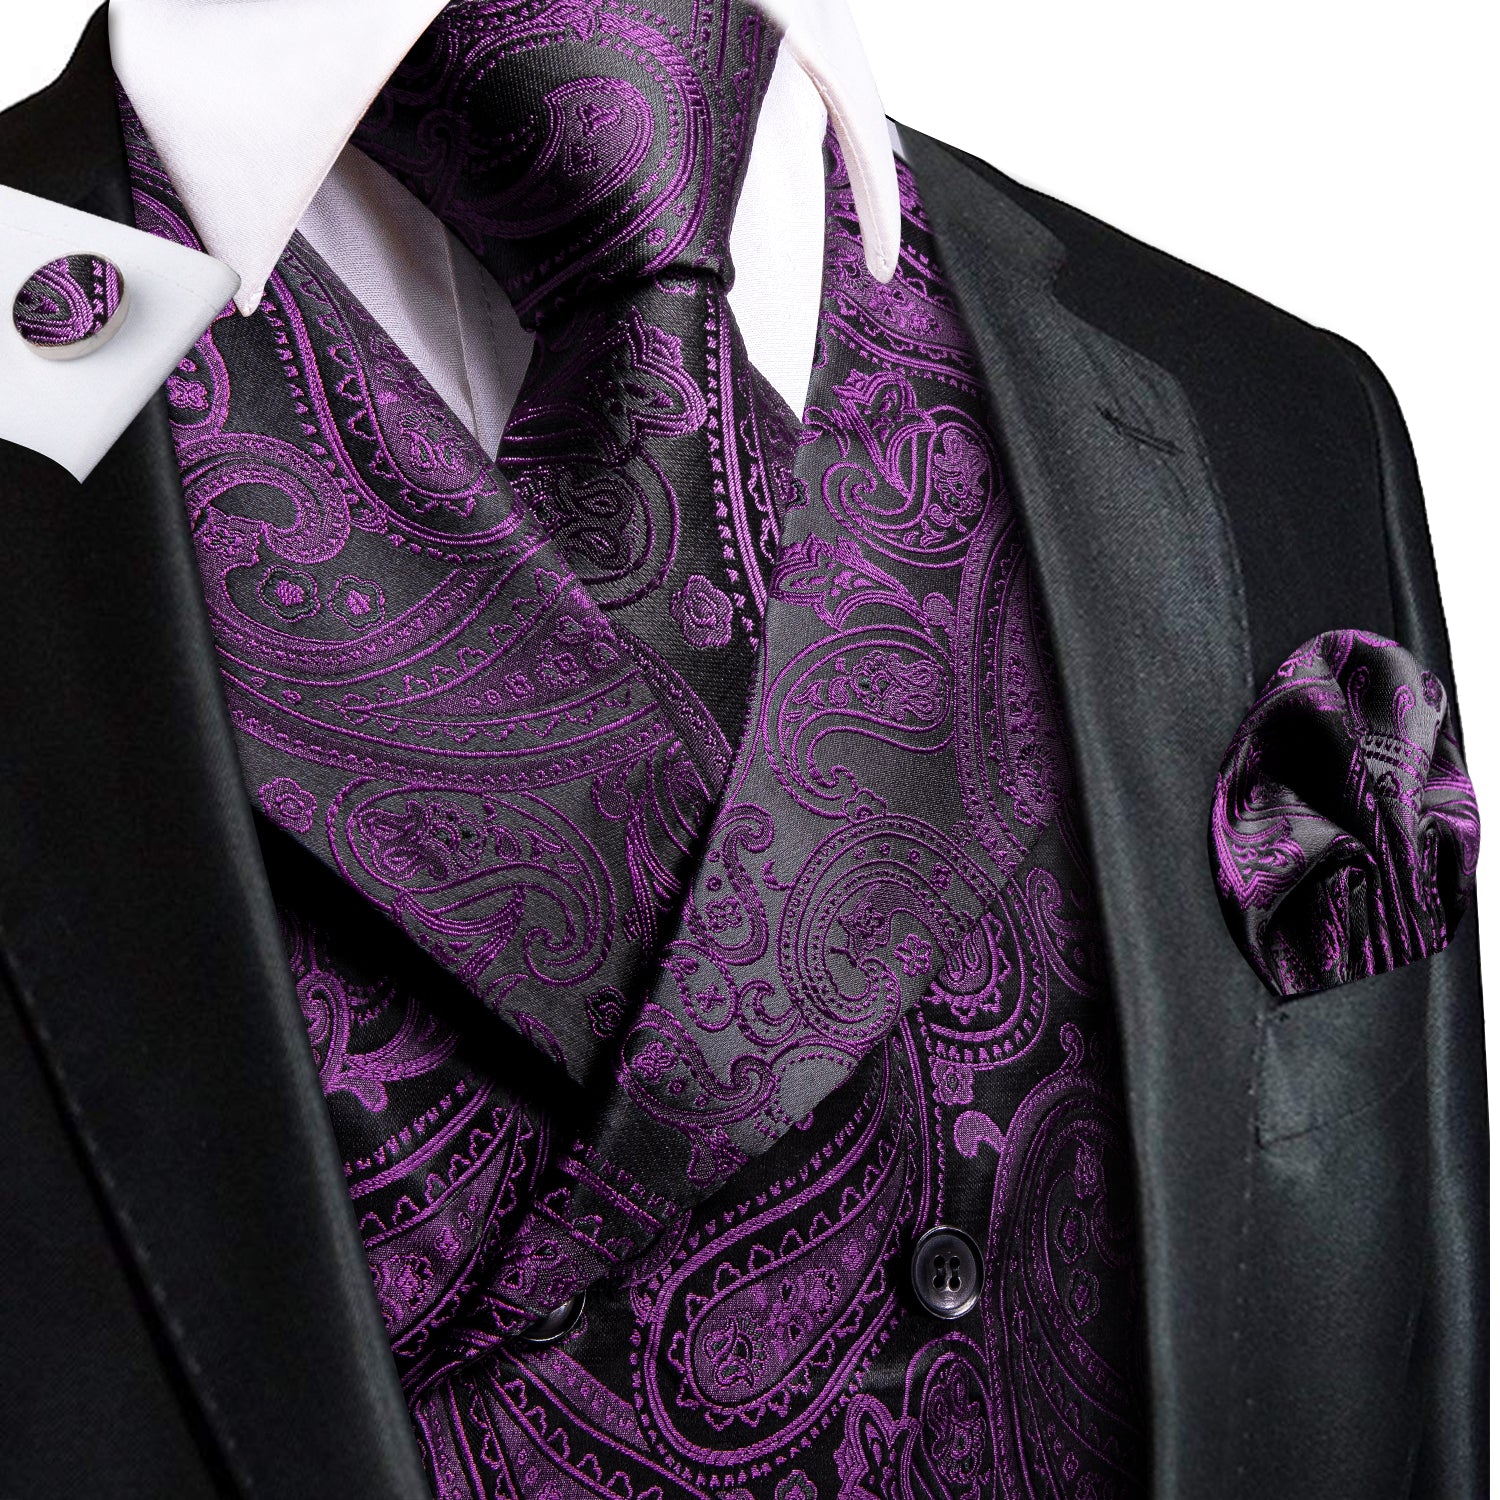 Deep Purple Paisley Men's Collar Vest Hanky Cufflinks Tie Set